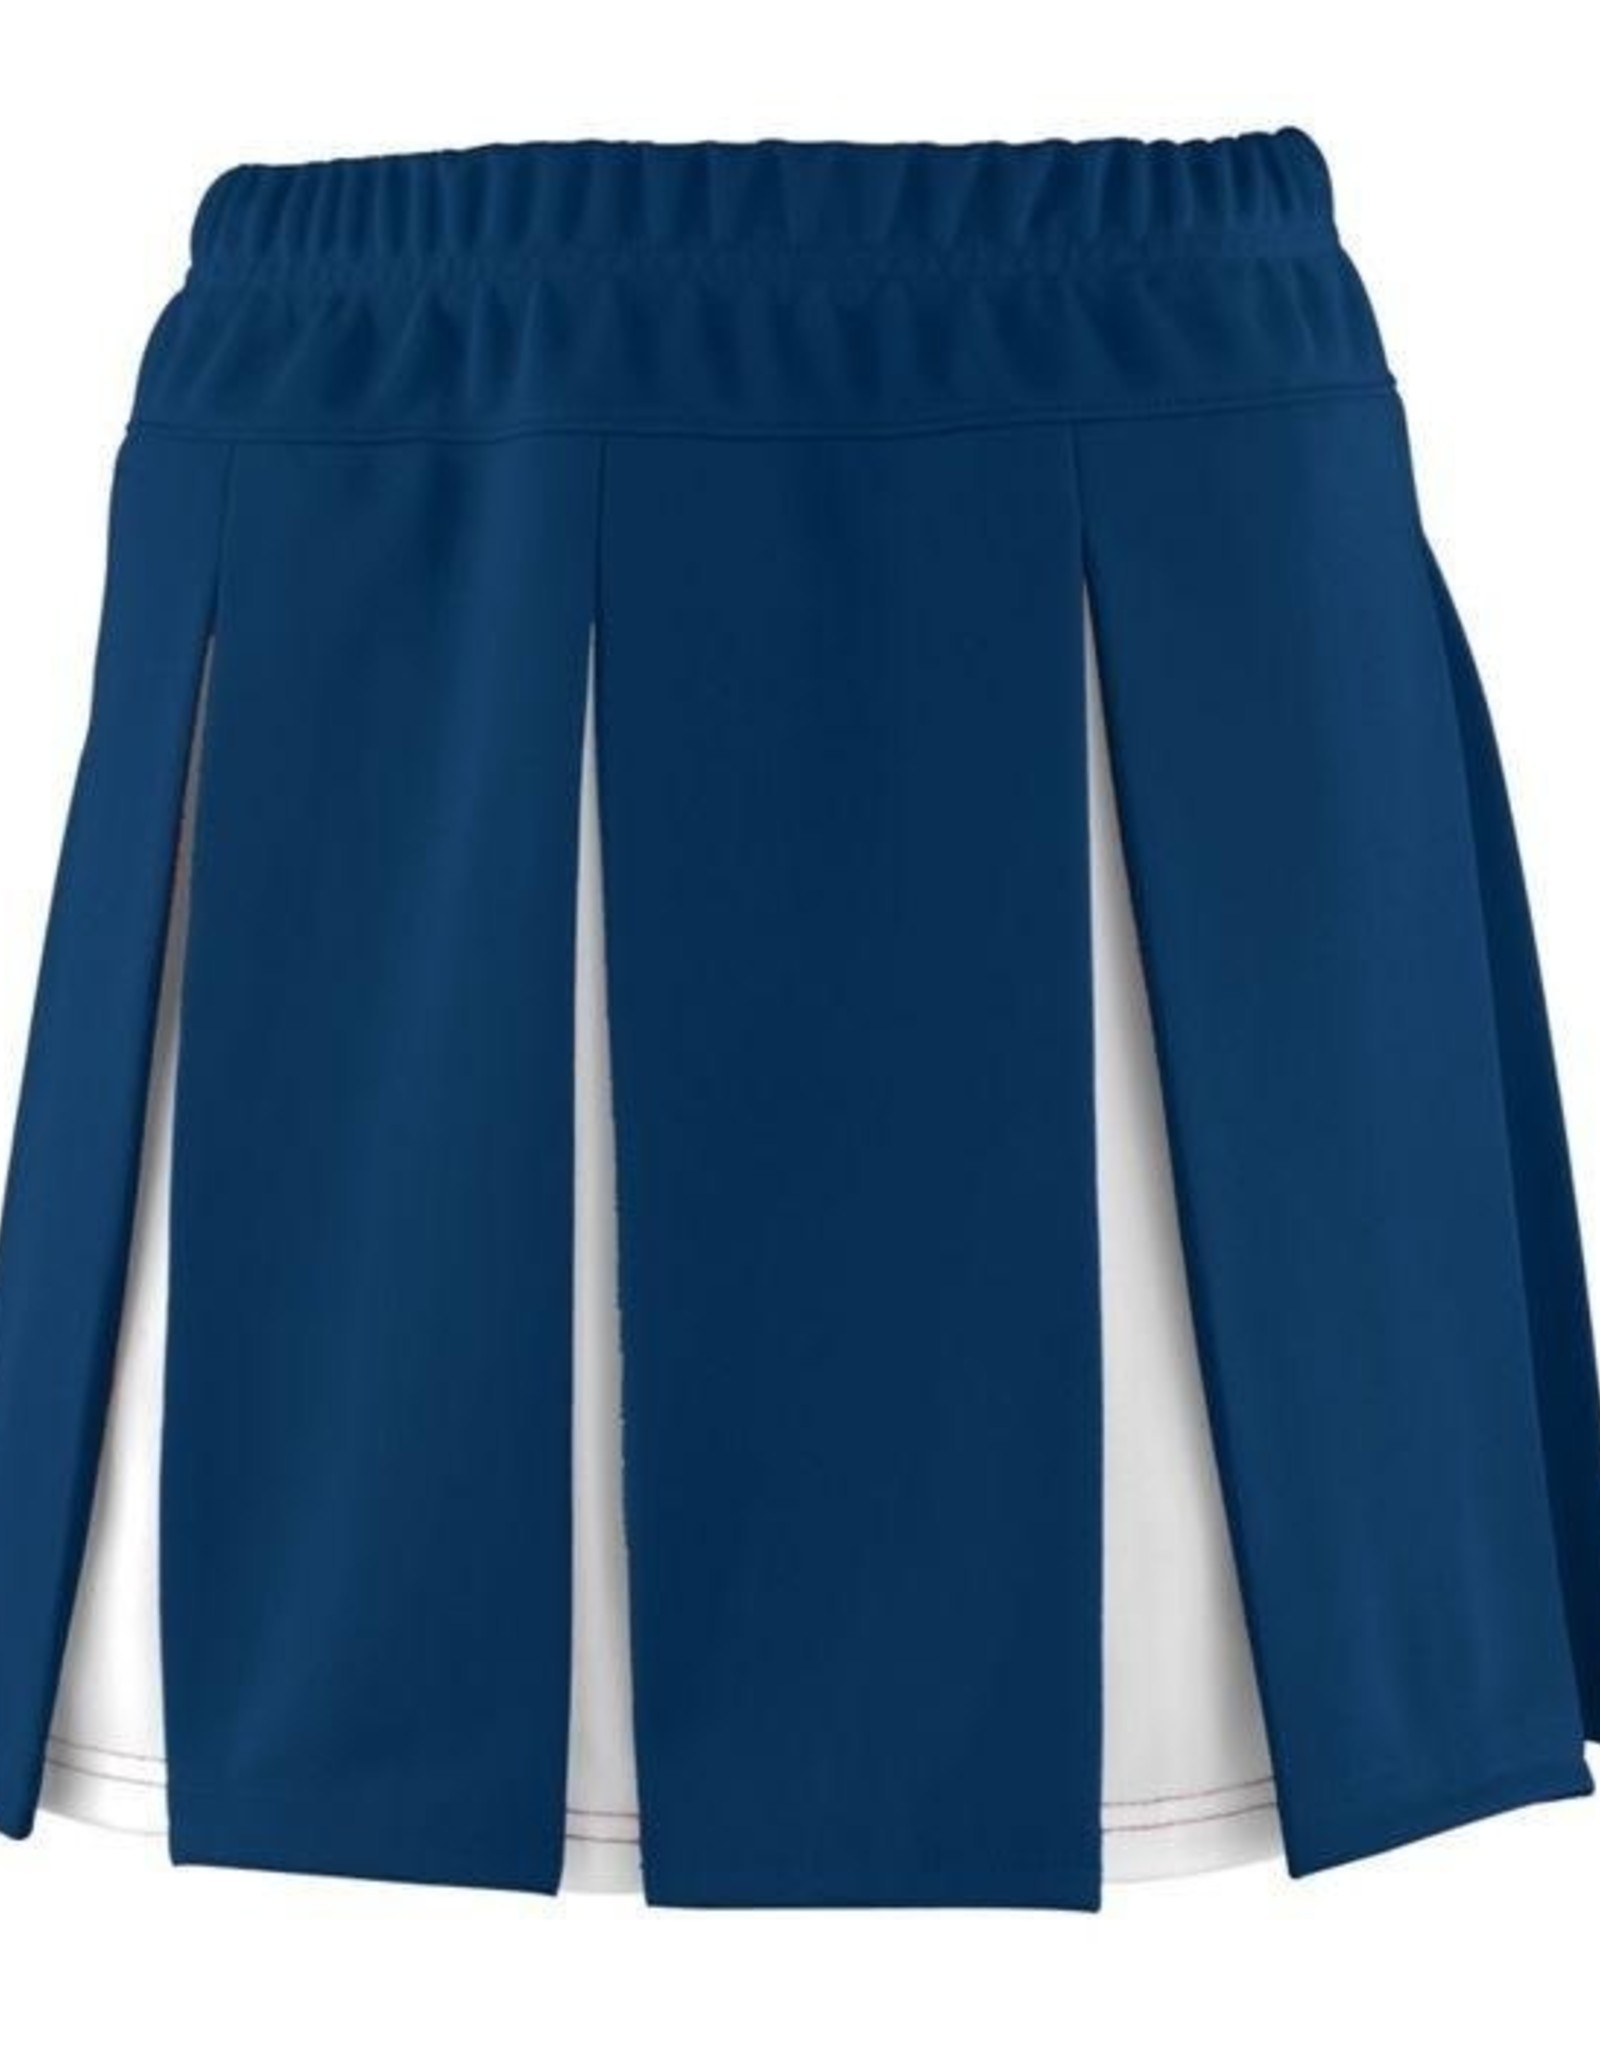 NON-UNIFORM JD Mini Cheerleader Pleat Skirt